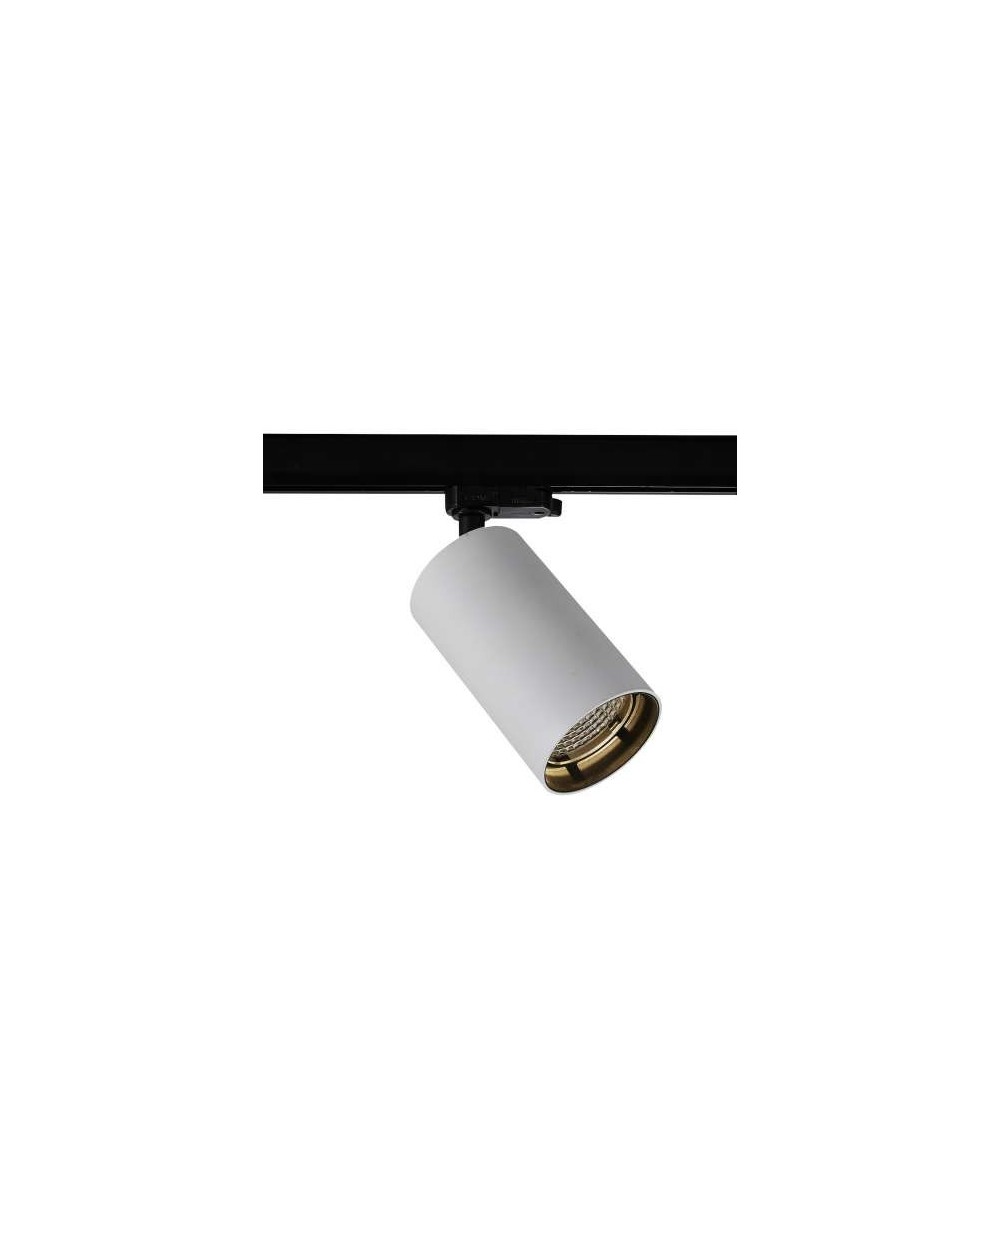 Reflektor szynowy MOB Track 28W LED biały mat Mistic Lighting oprawa techniczna do montażu w szynach lub na suficie